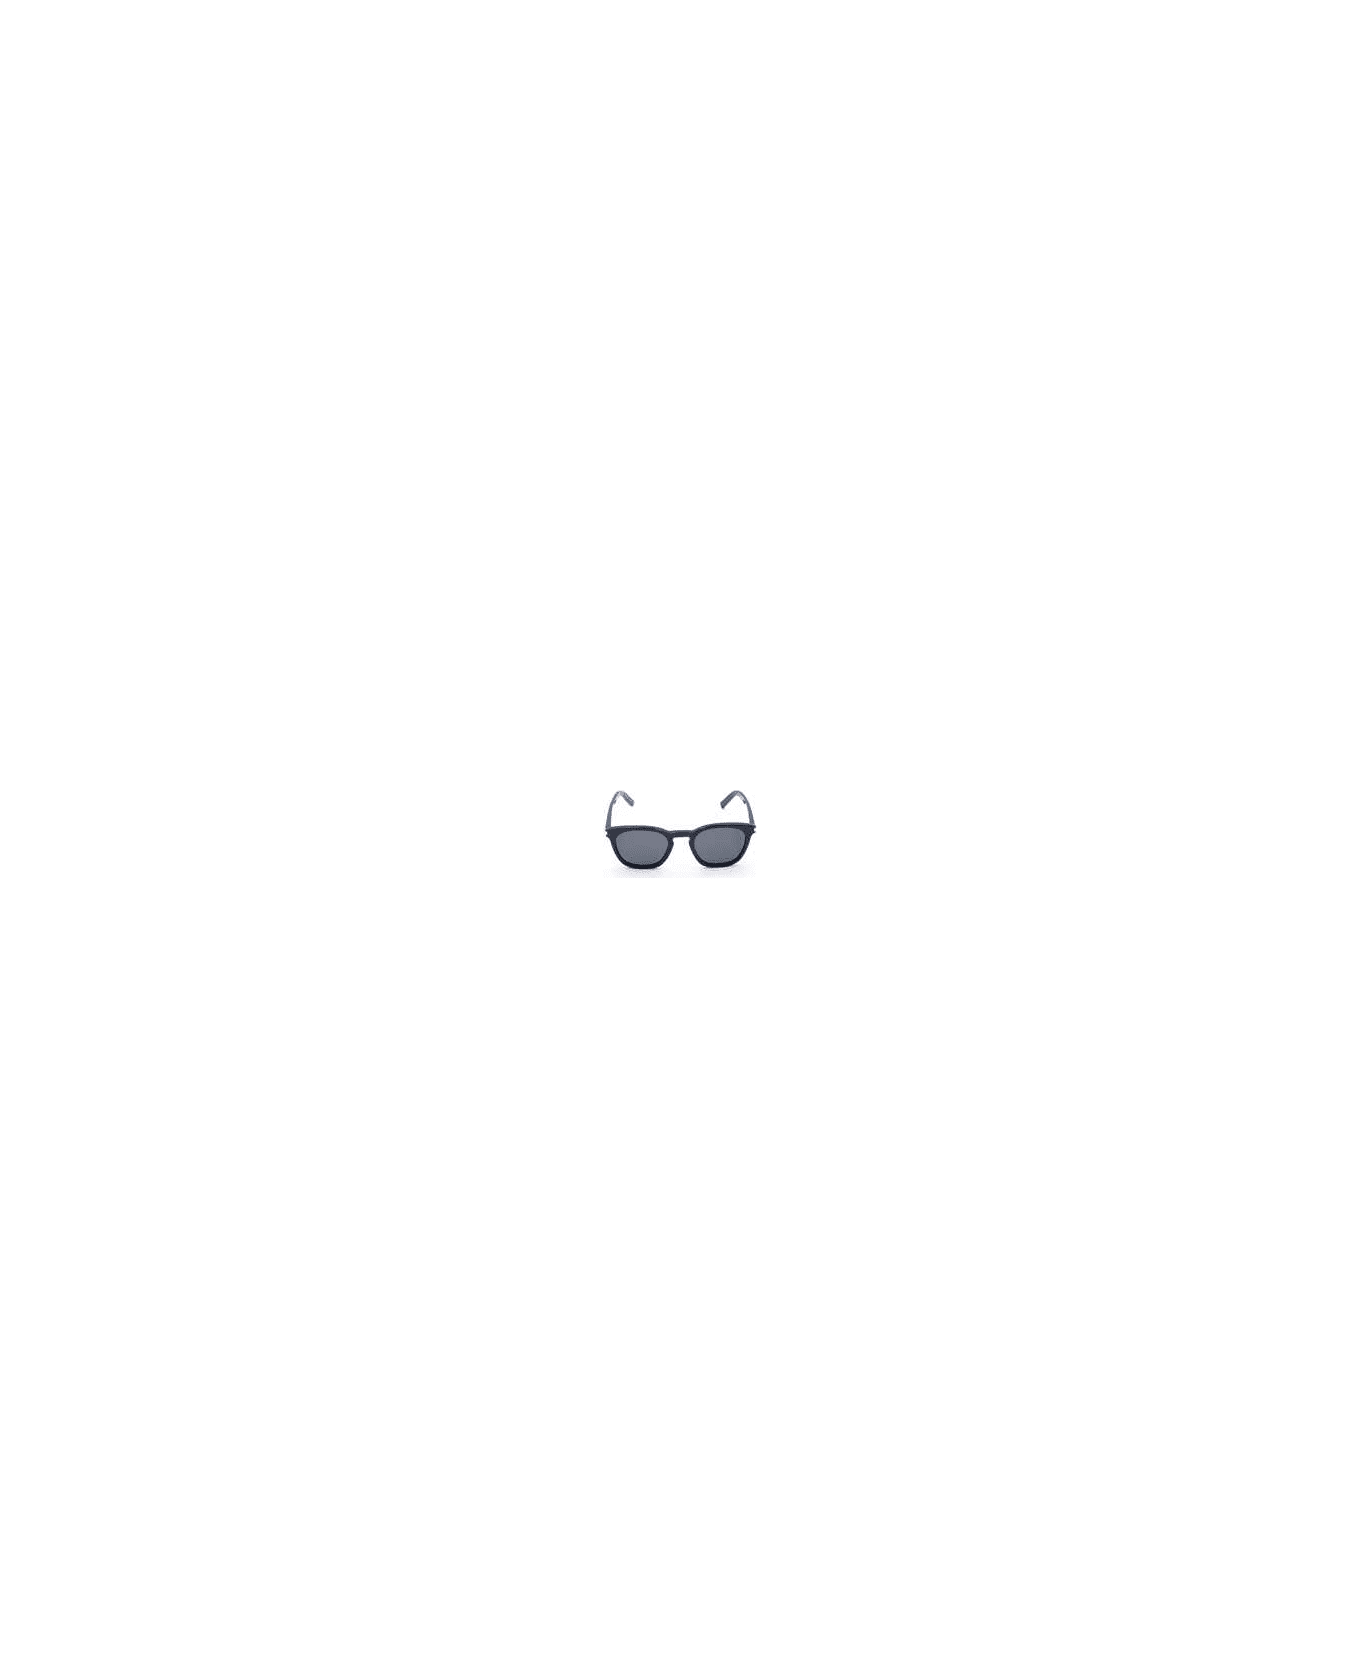 Saint Laurent Eyewear SL 28 Sunglasses - Black Black Smoke サングラス